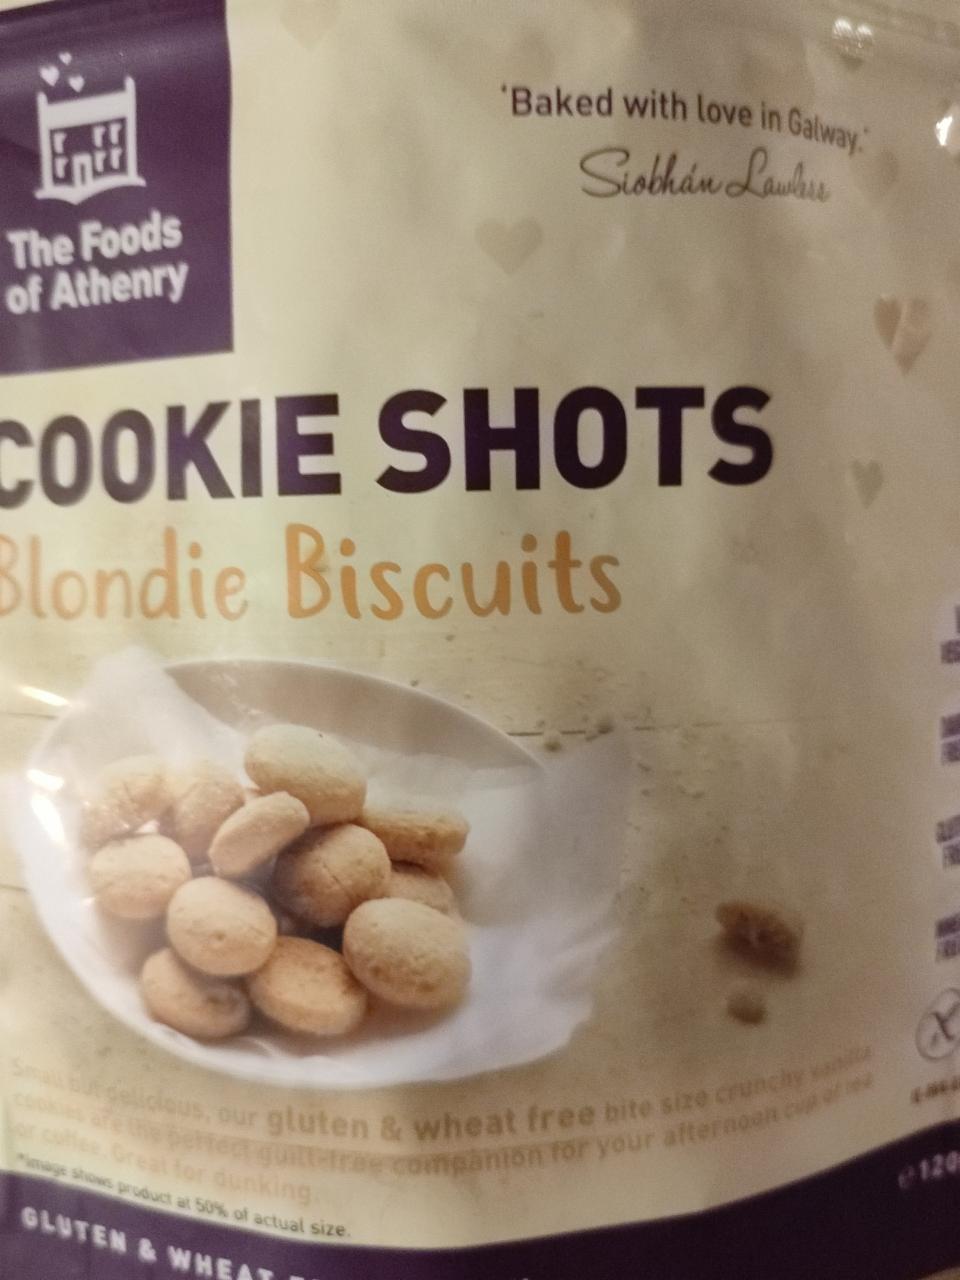 Fotografie - Cookie shots Blondie Biscuits